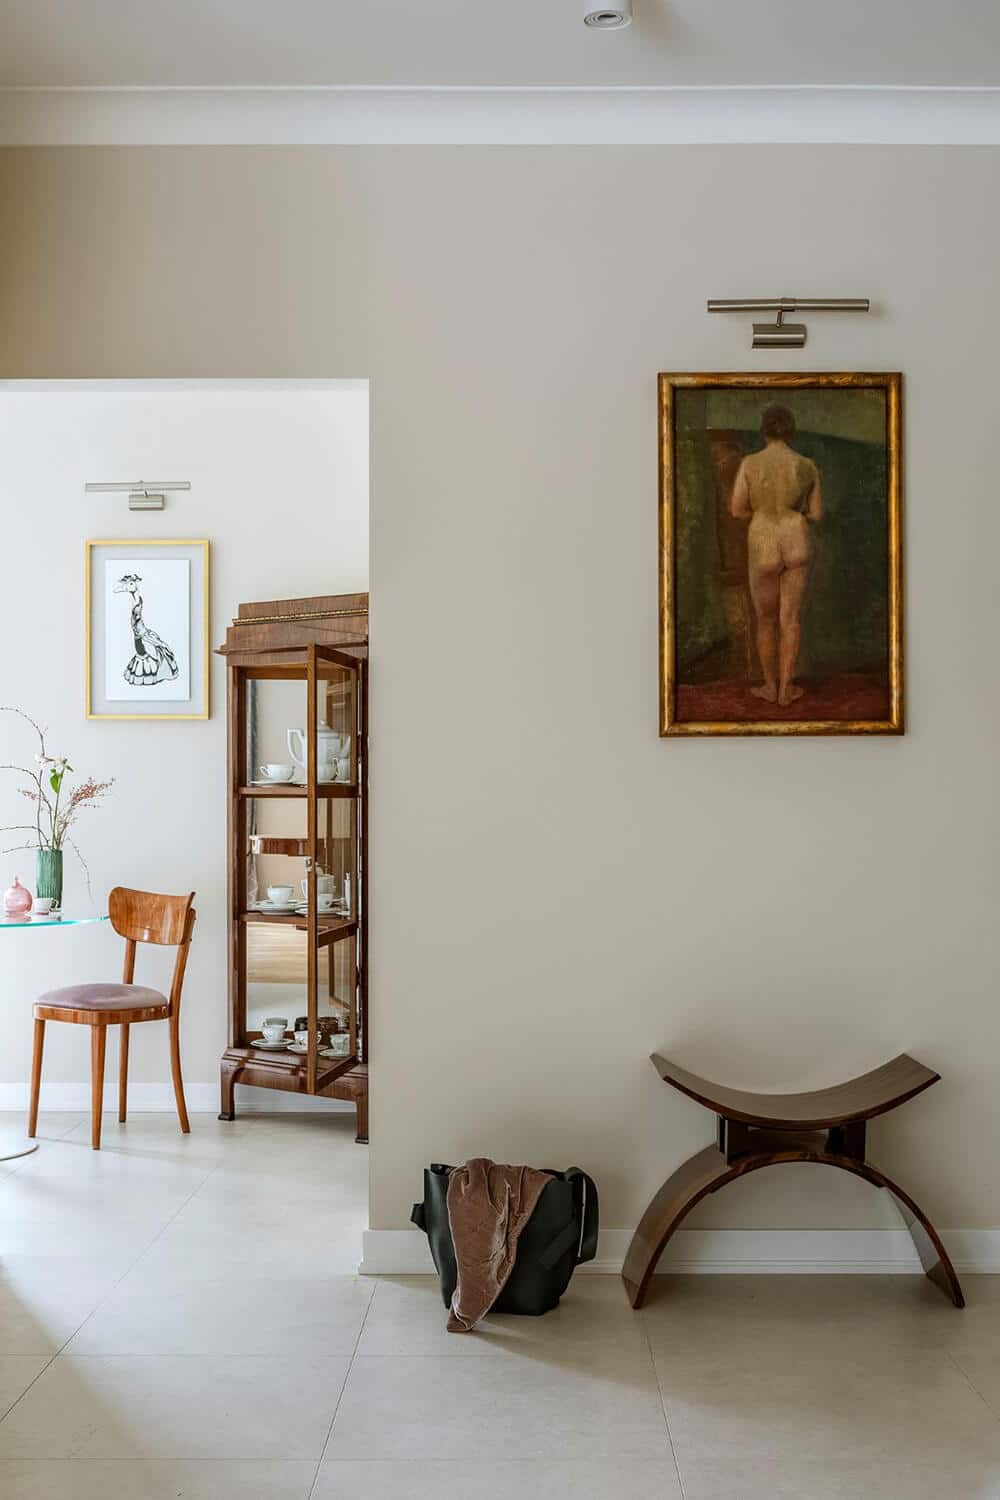 Mieszkać ze sztuką. Stare obrazy, meble z duszą i współczesny design, czyli dom w stylu modern classic.